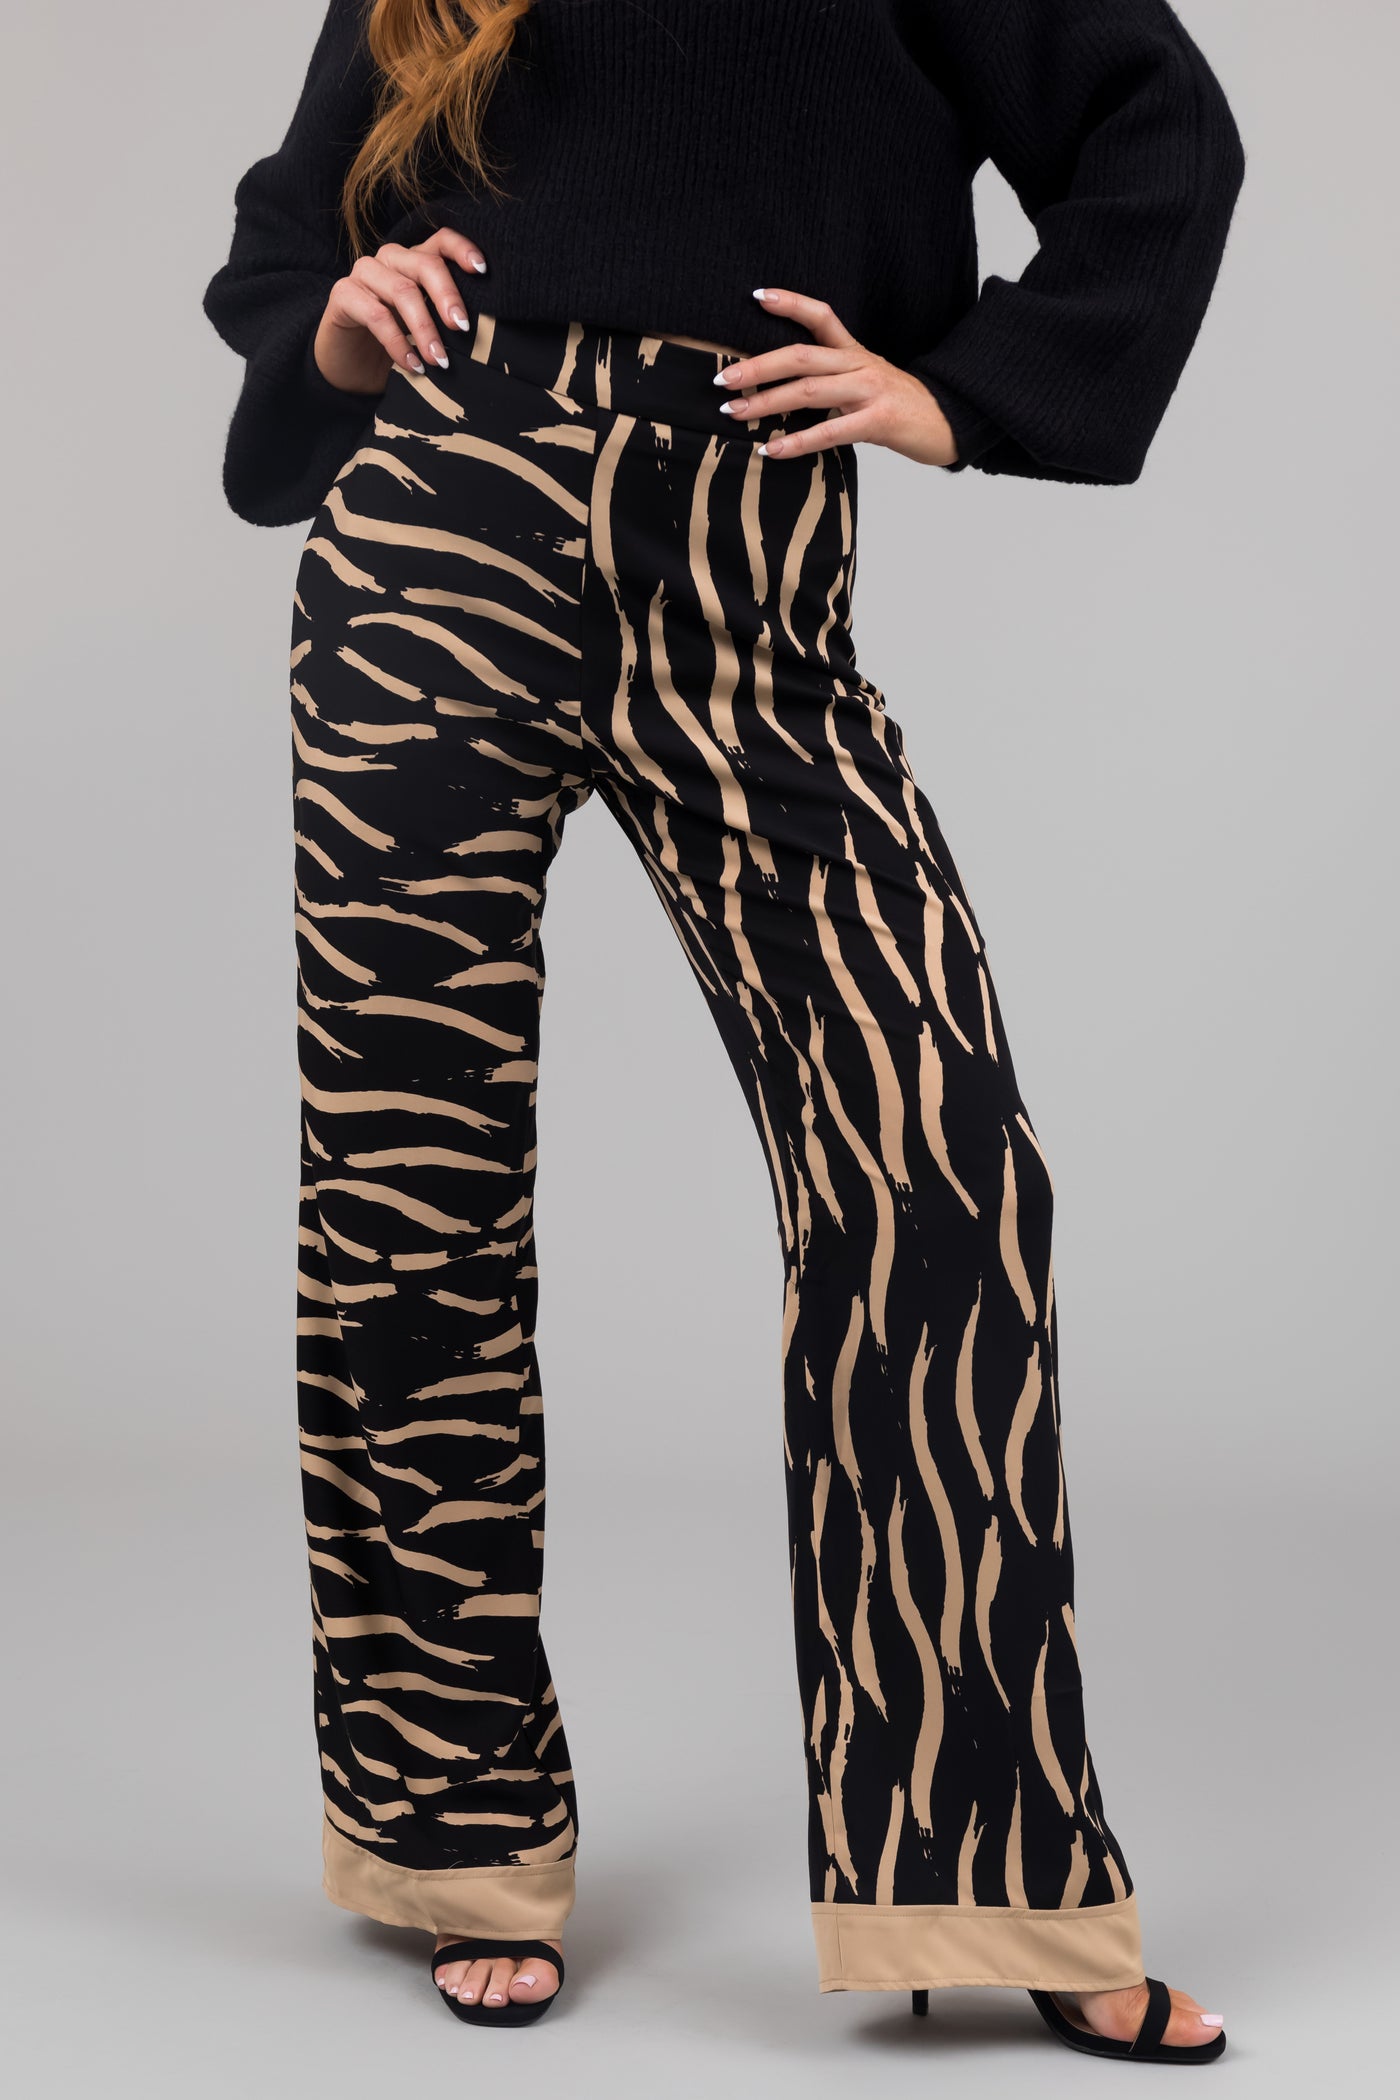 Black and Beige Zebra Print Pants